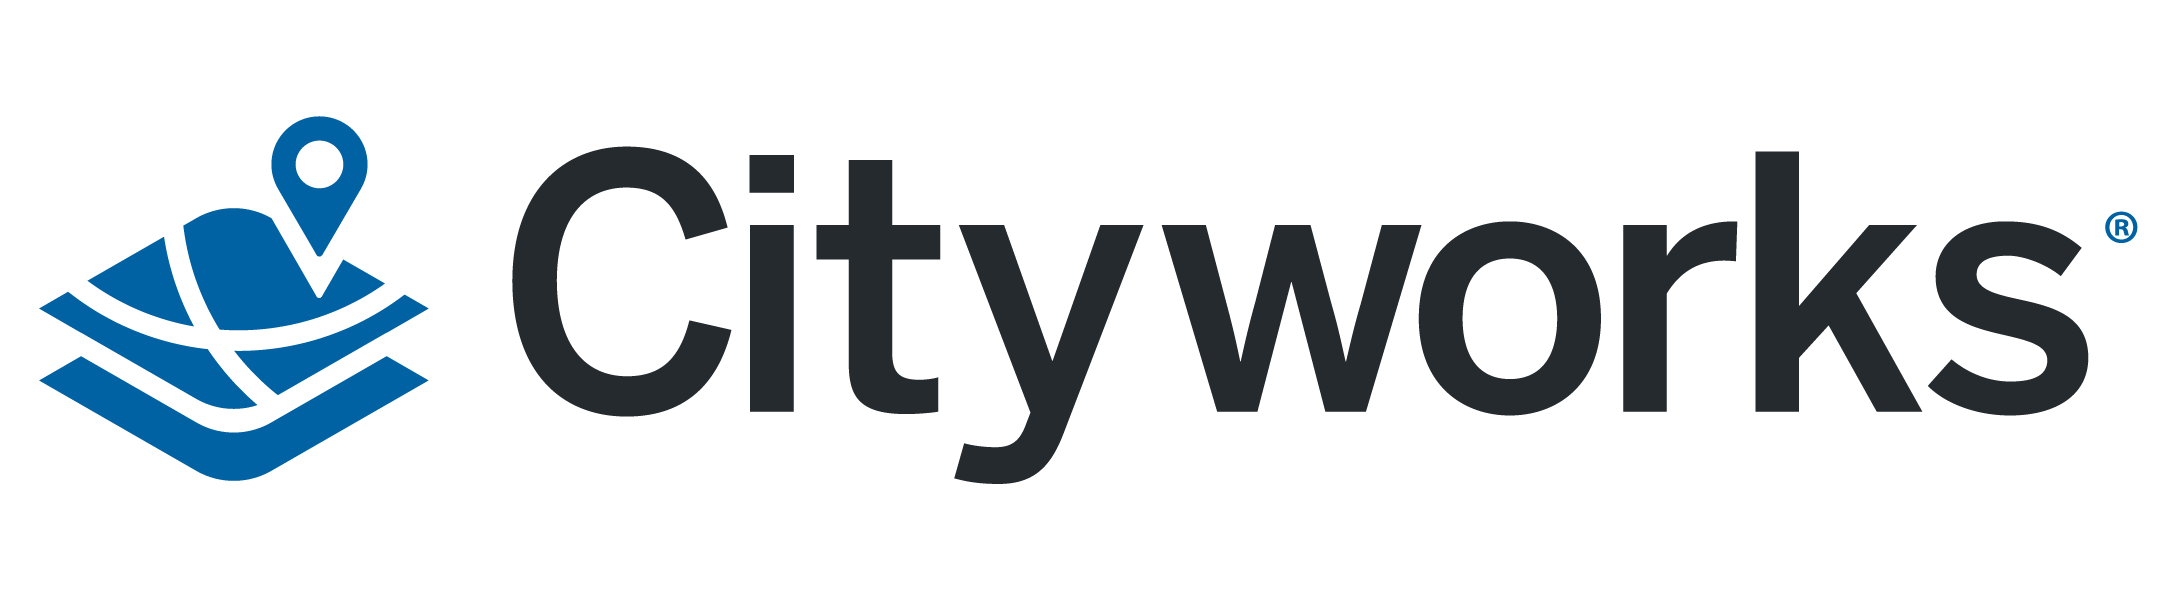 Cityworks Sewer Asset Management Logo